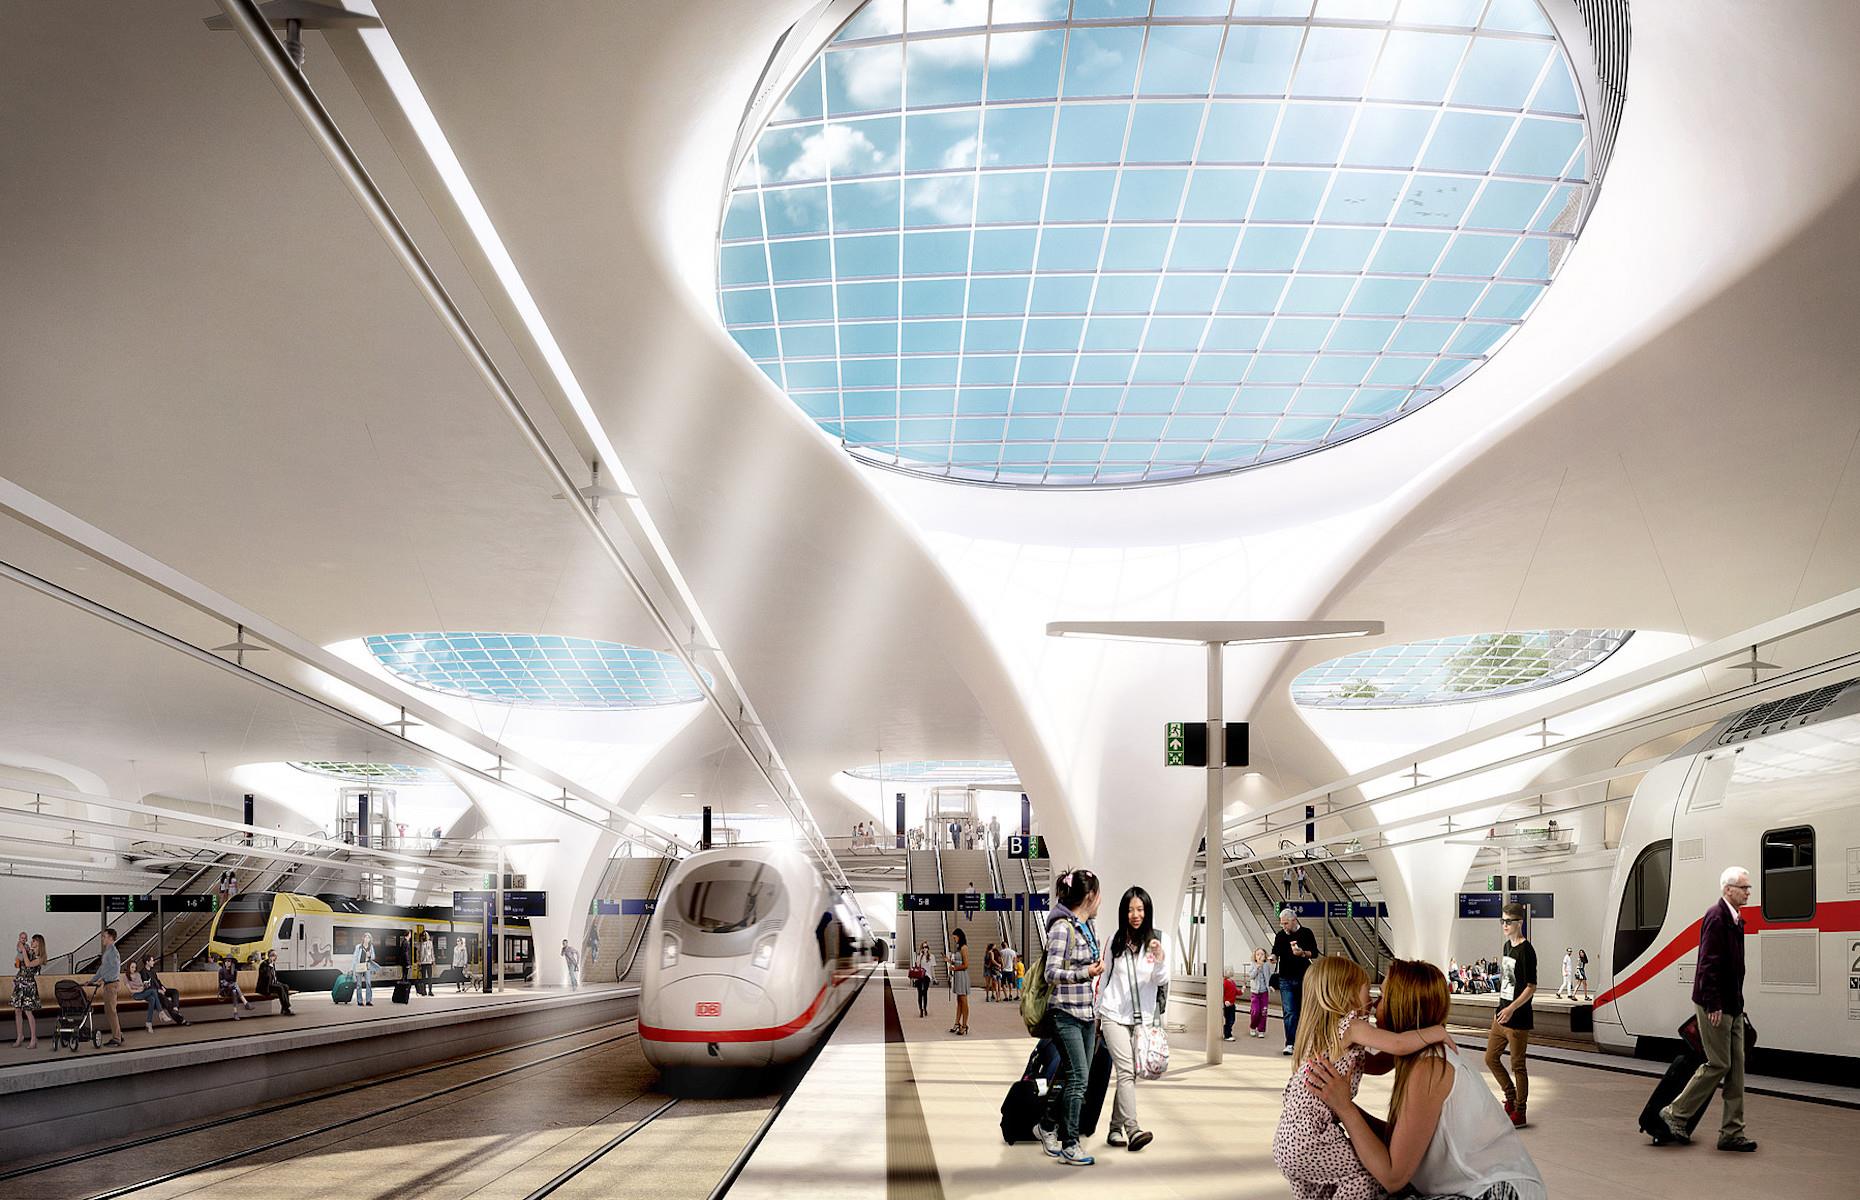 Stuttgart 21 rail project, Germany: surprise delays